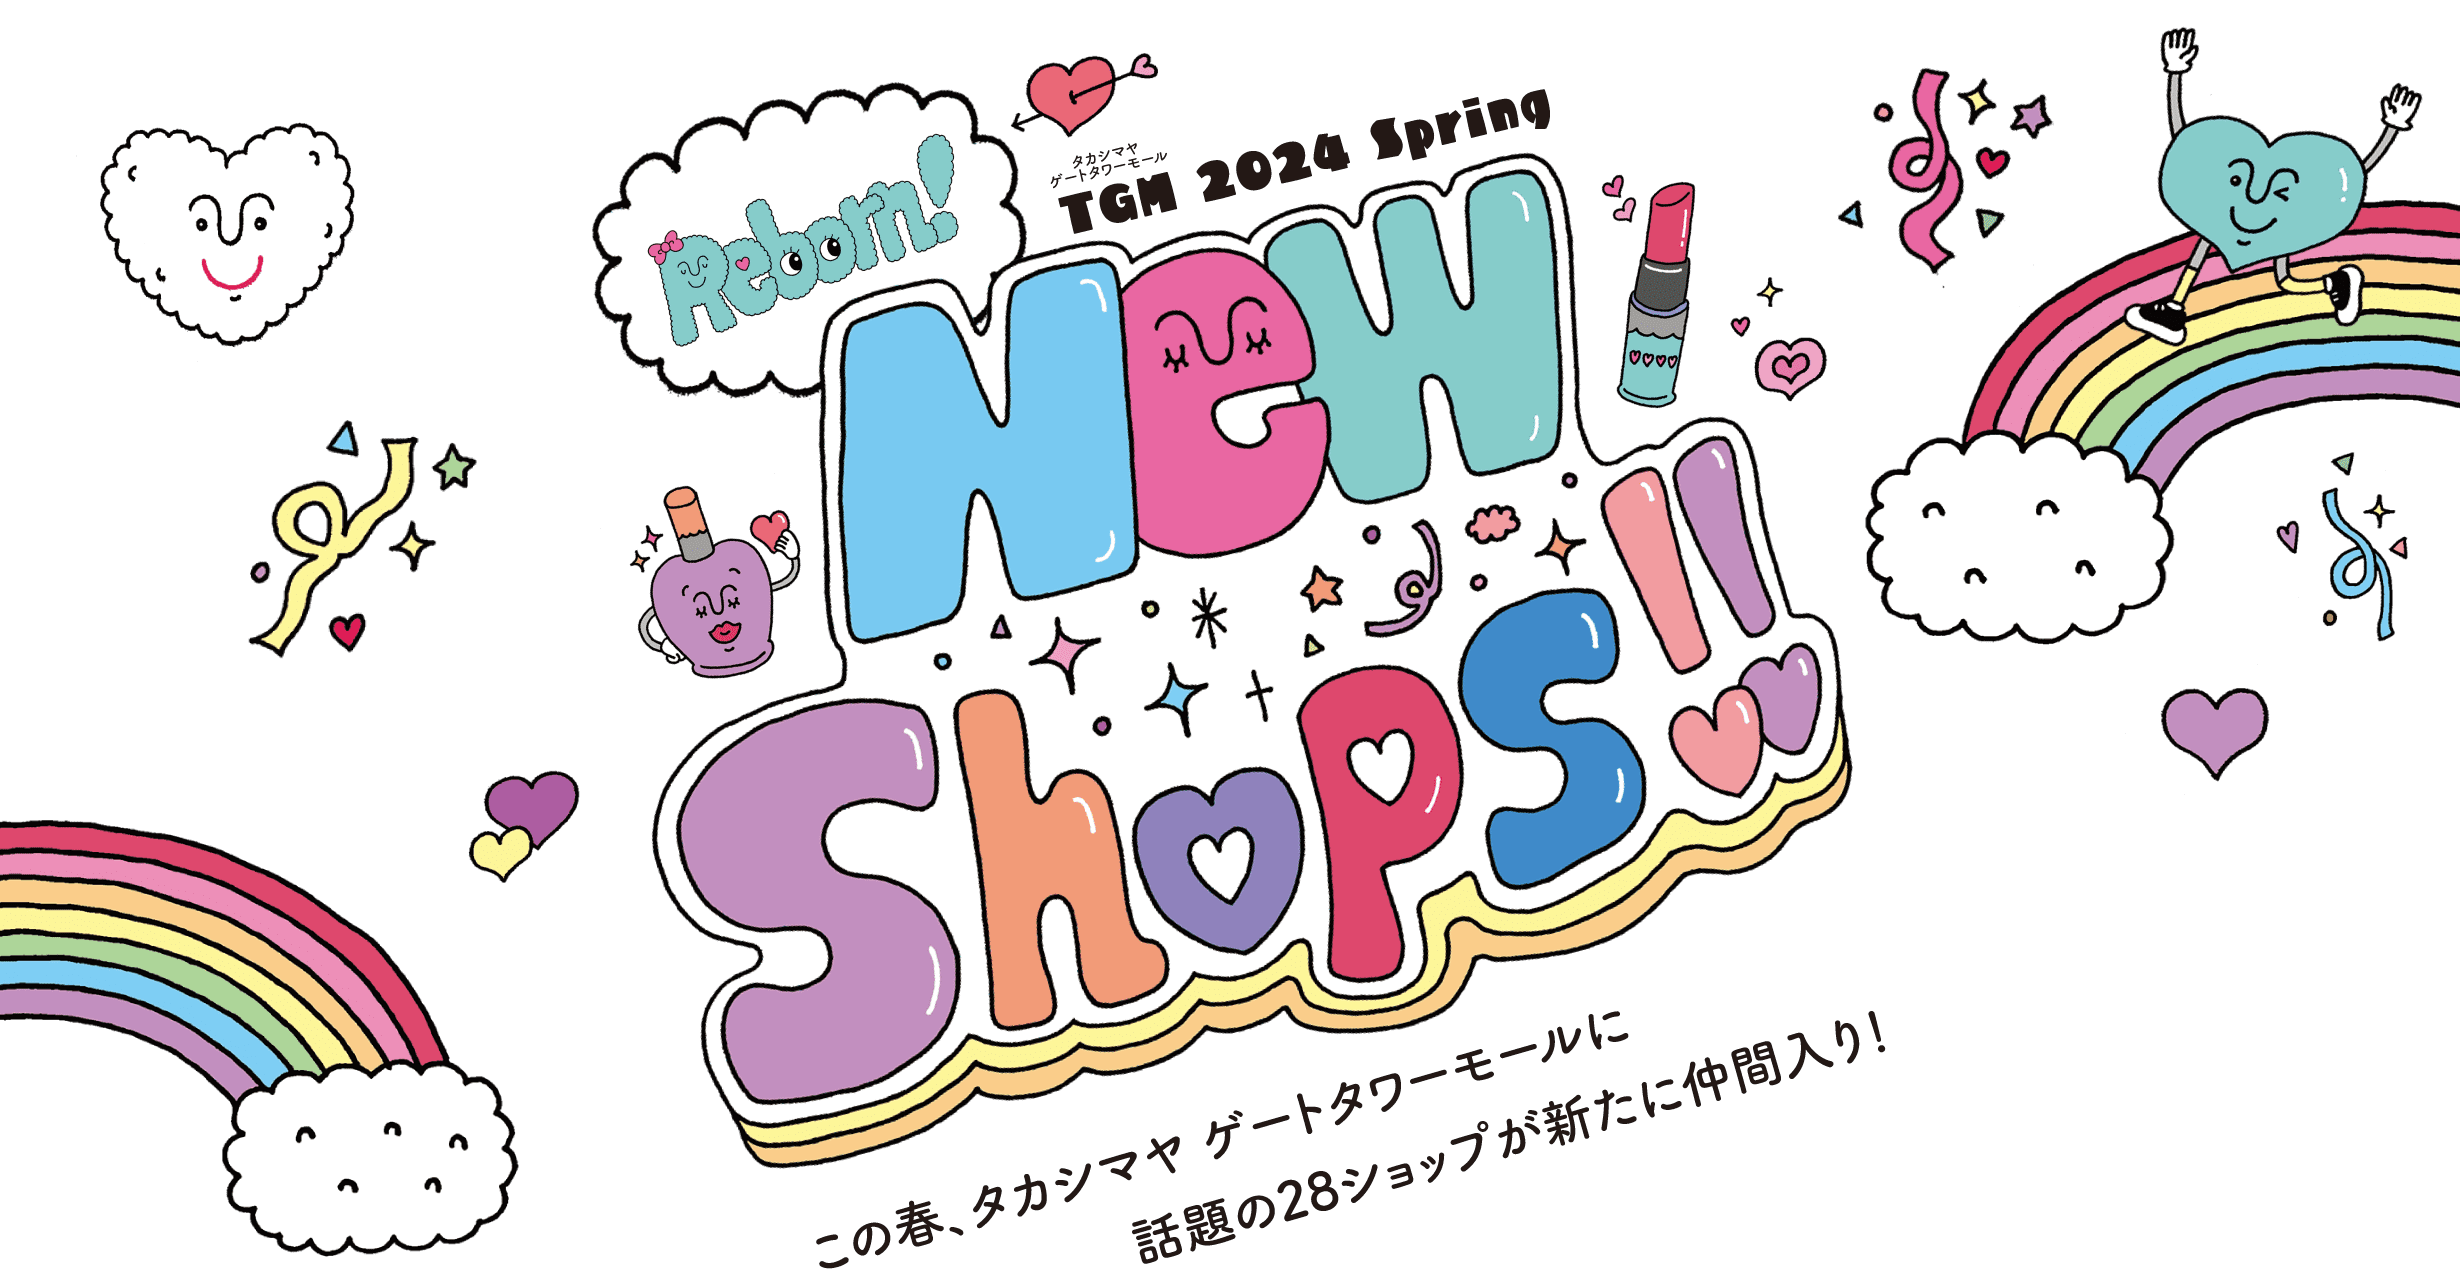 New Shops！！　この春、タカシマヤ ゲートタワーモールに話題の28ショップが新たに仲間入り！